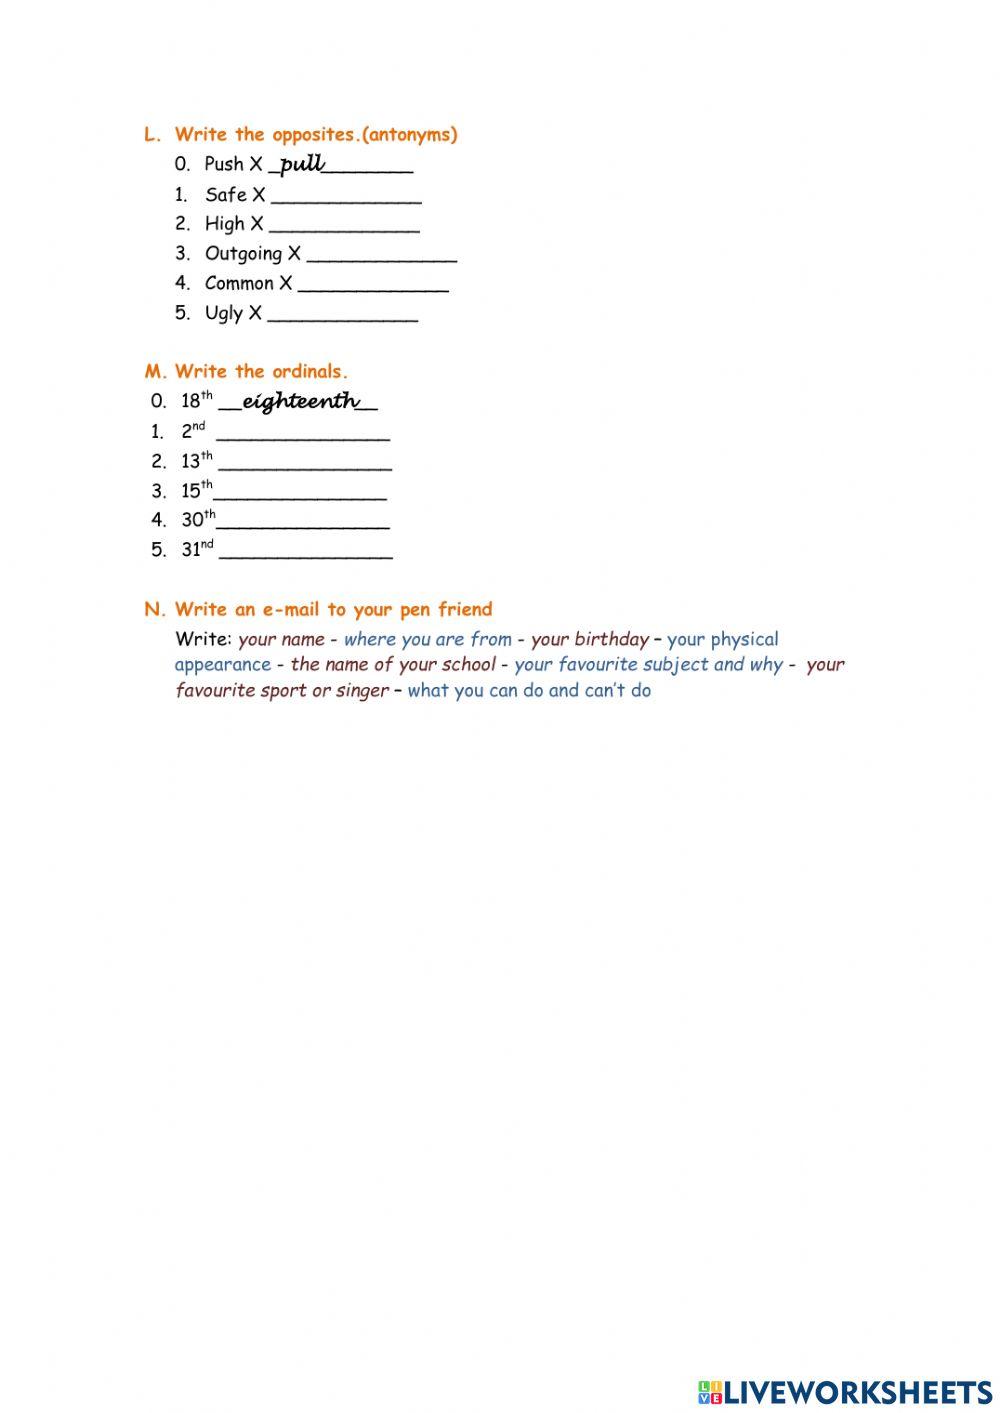 Level 4 Practice quiz 1 summer